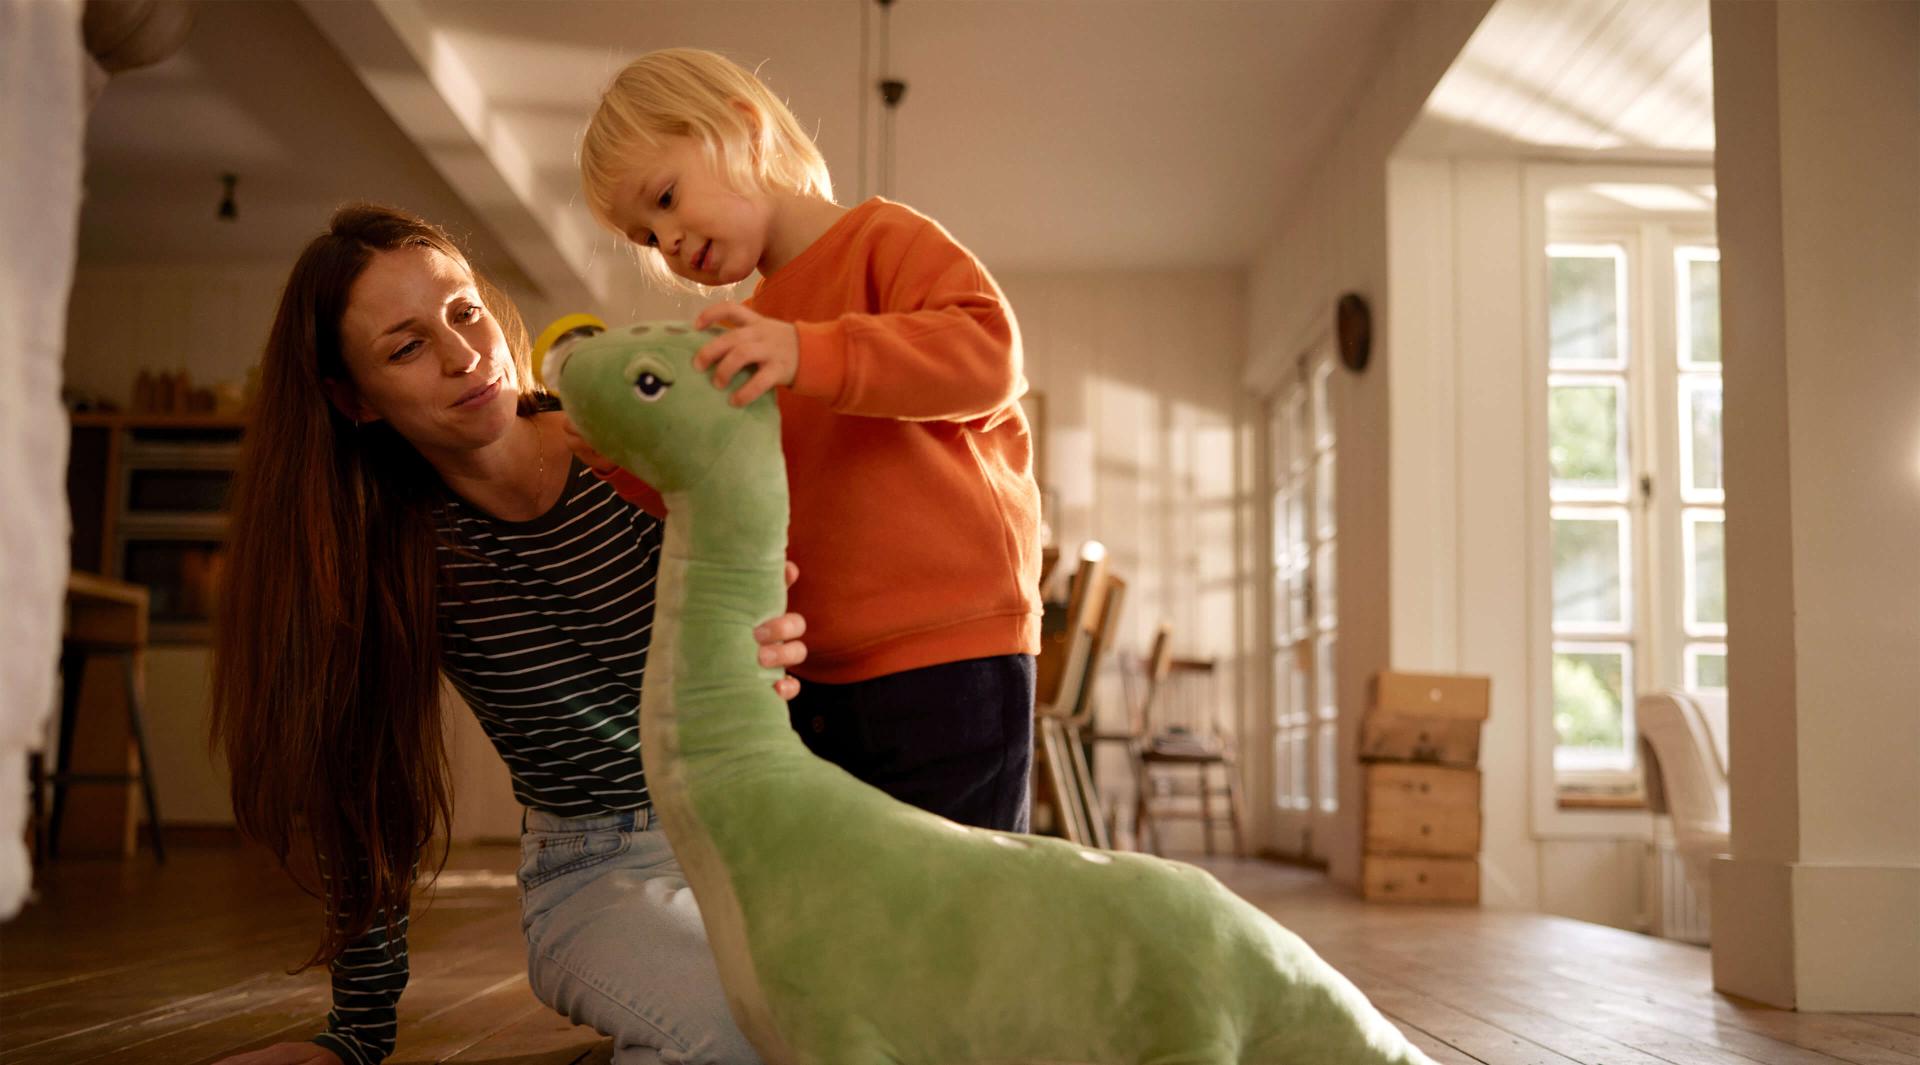 Frau und Kind spielen mit einem großen Stofftierdinosaurier.